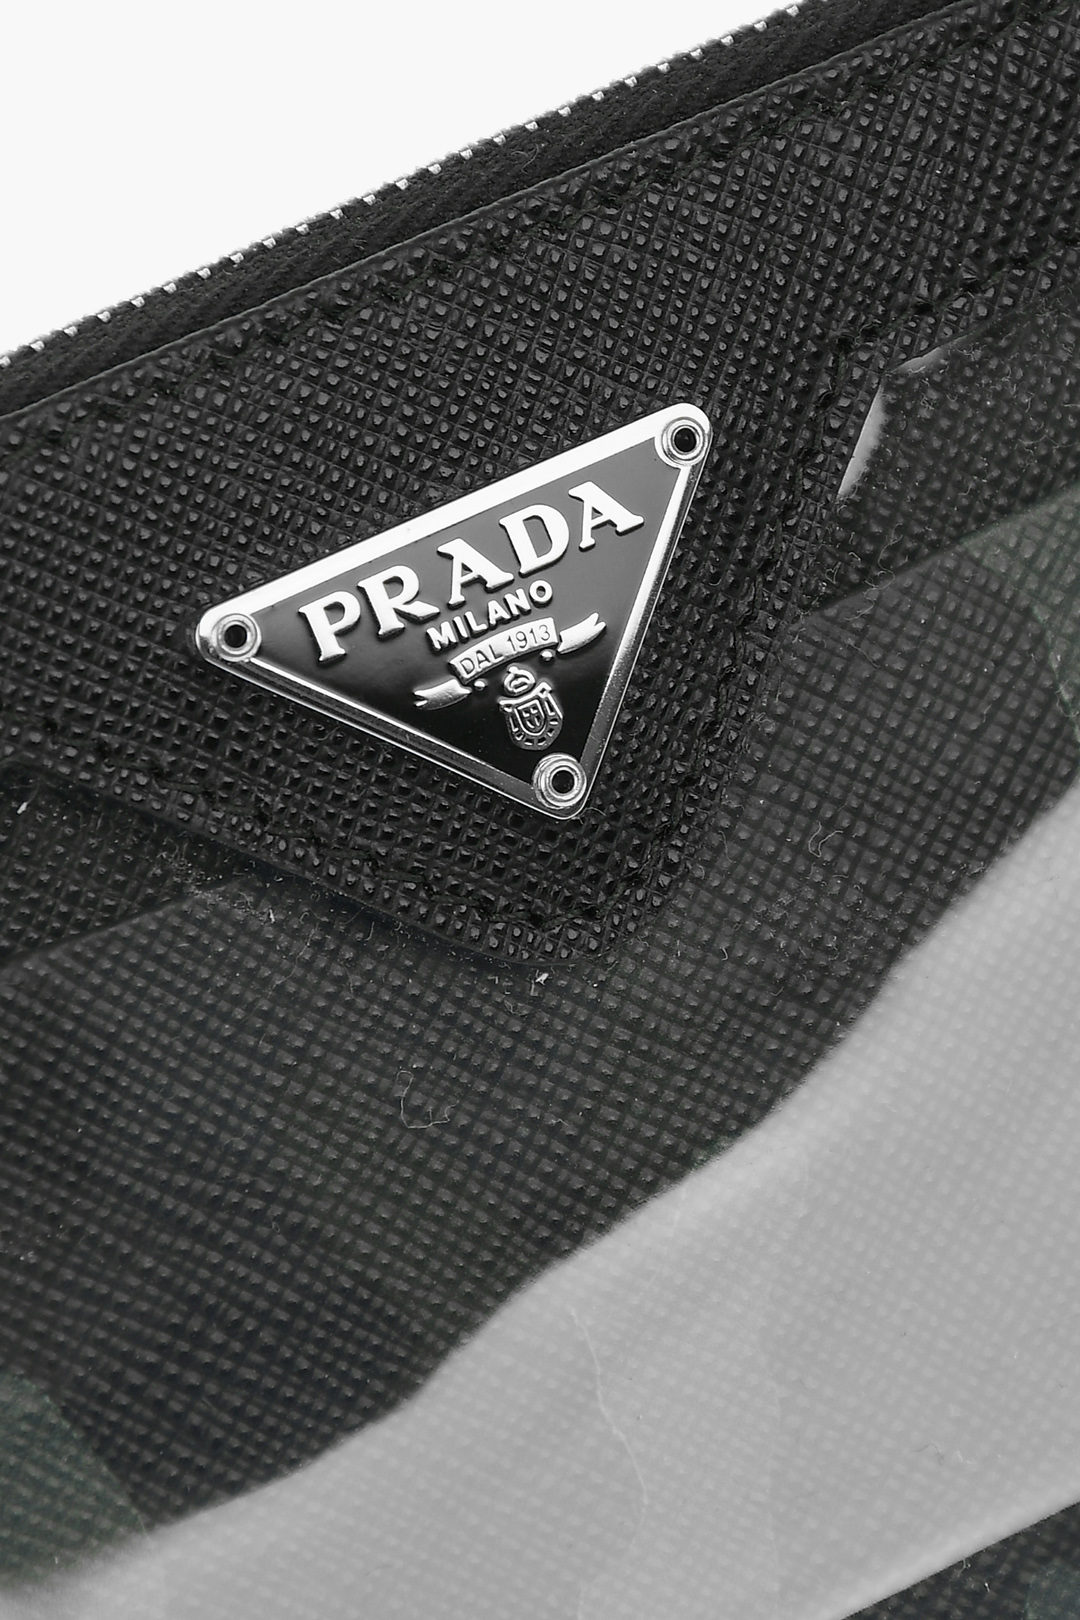 Prada Leather Card Holder with Shoulder Strap men - Glamood Outlet